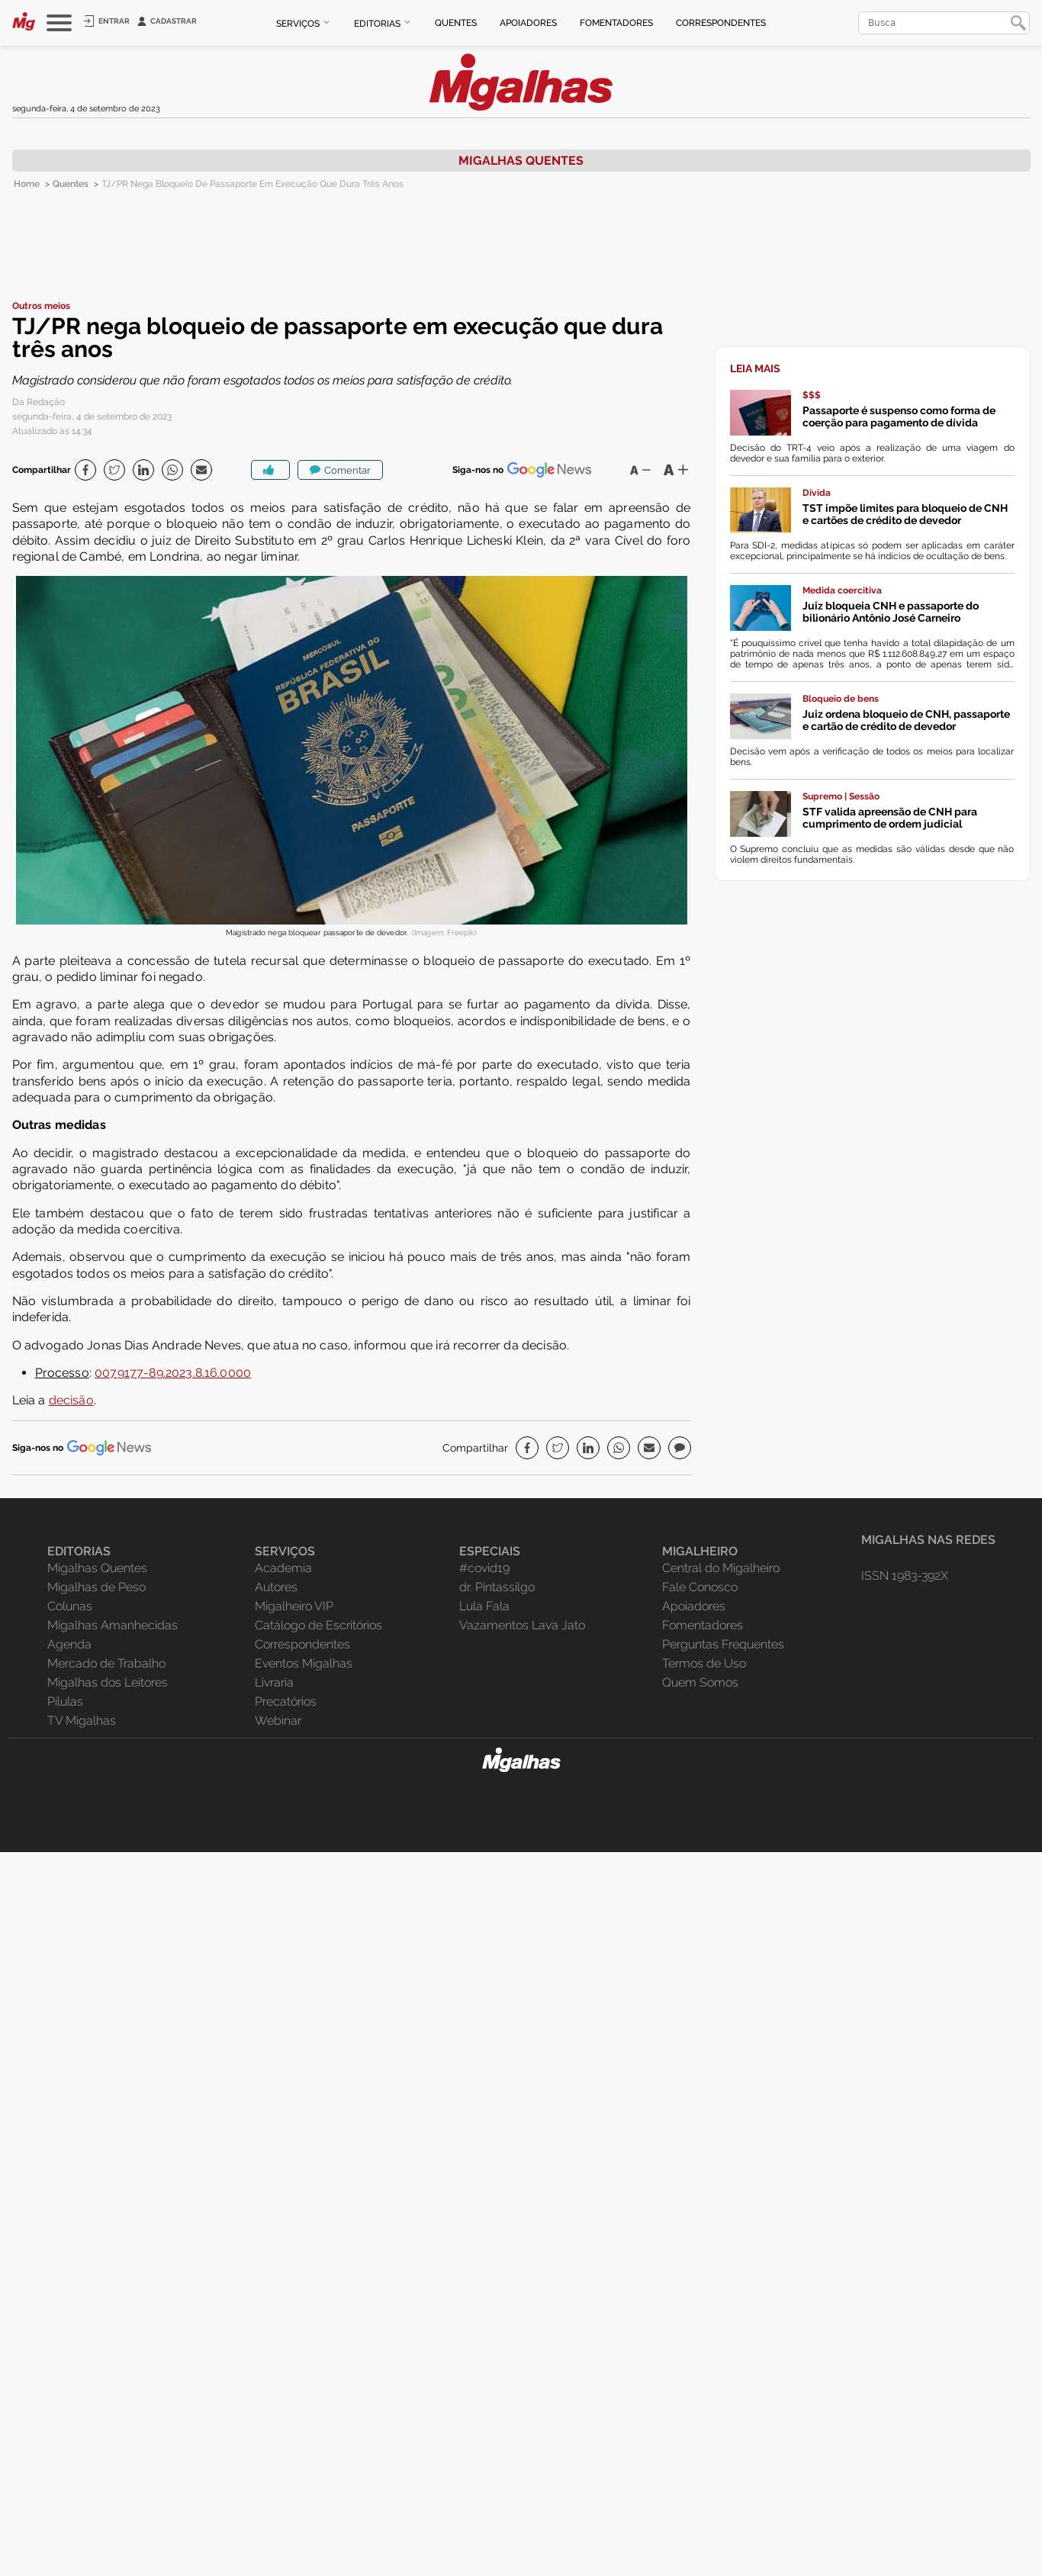 TJ/PR nega bloqueio de passaporte em execução que dura três anos